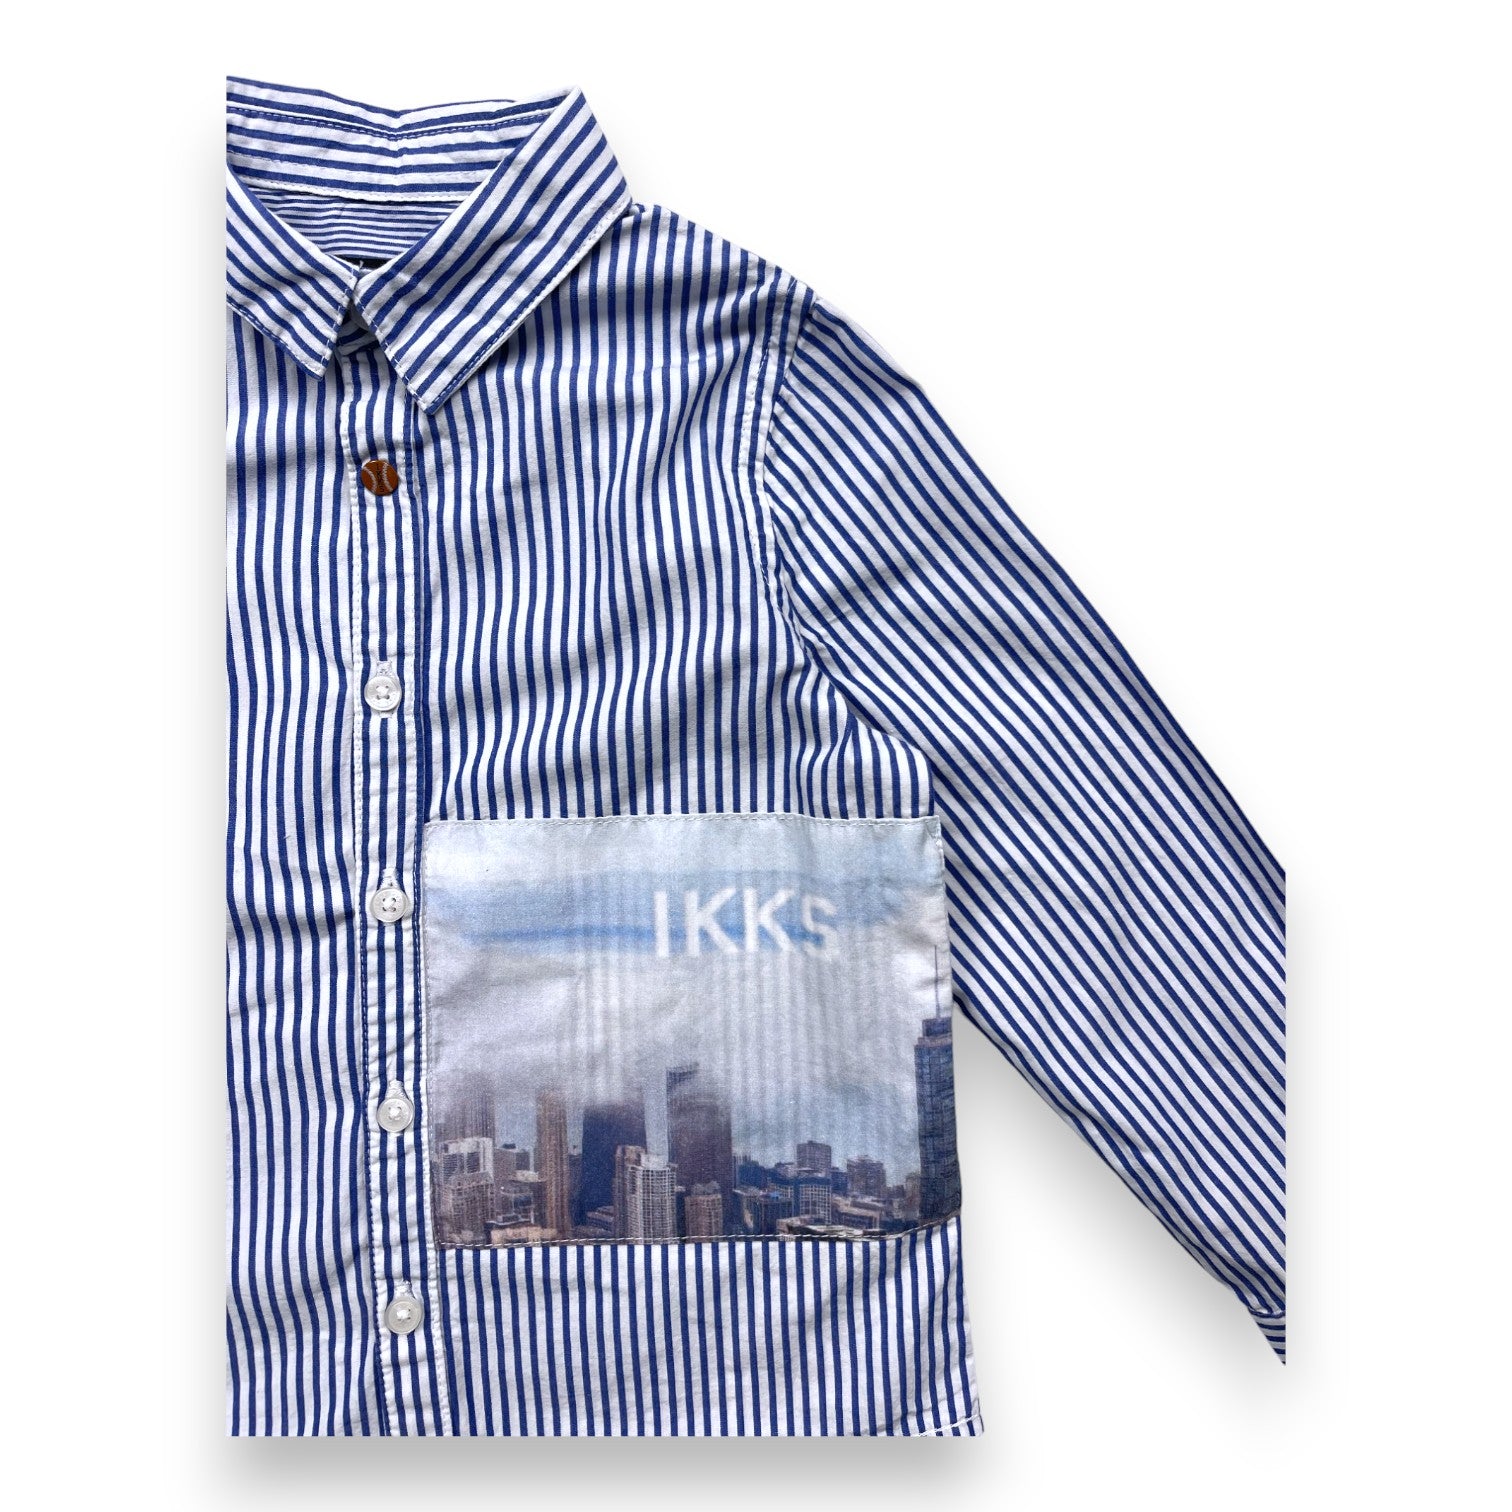 IKKS - Chemise bleue rayée empiècement image - 3 ans